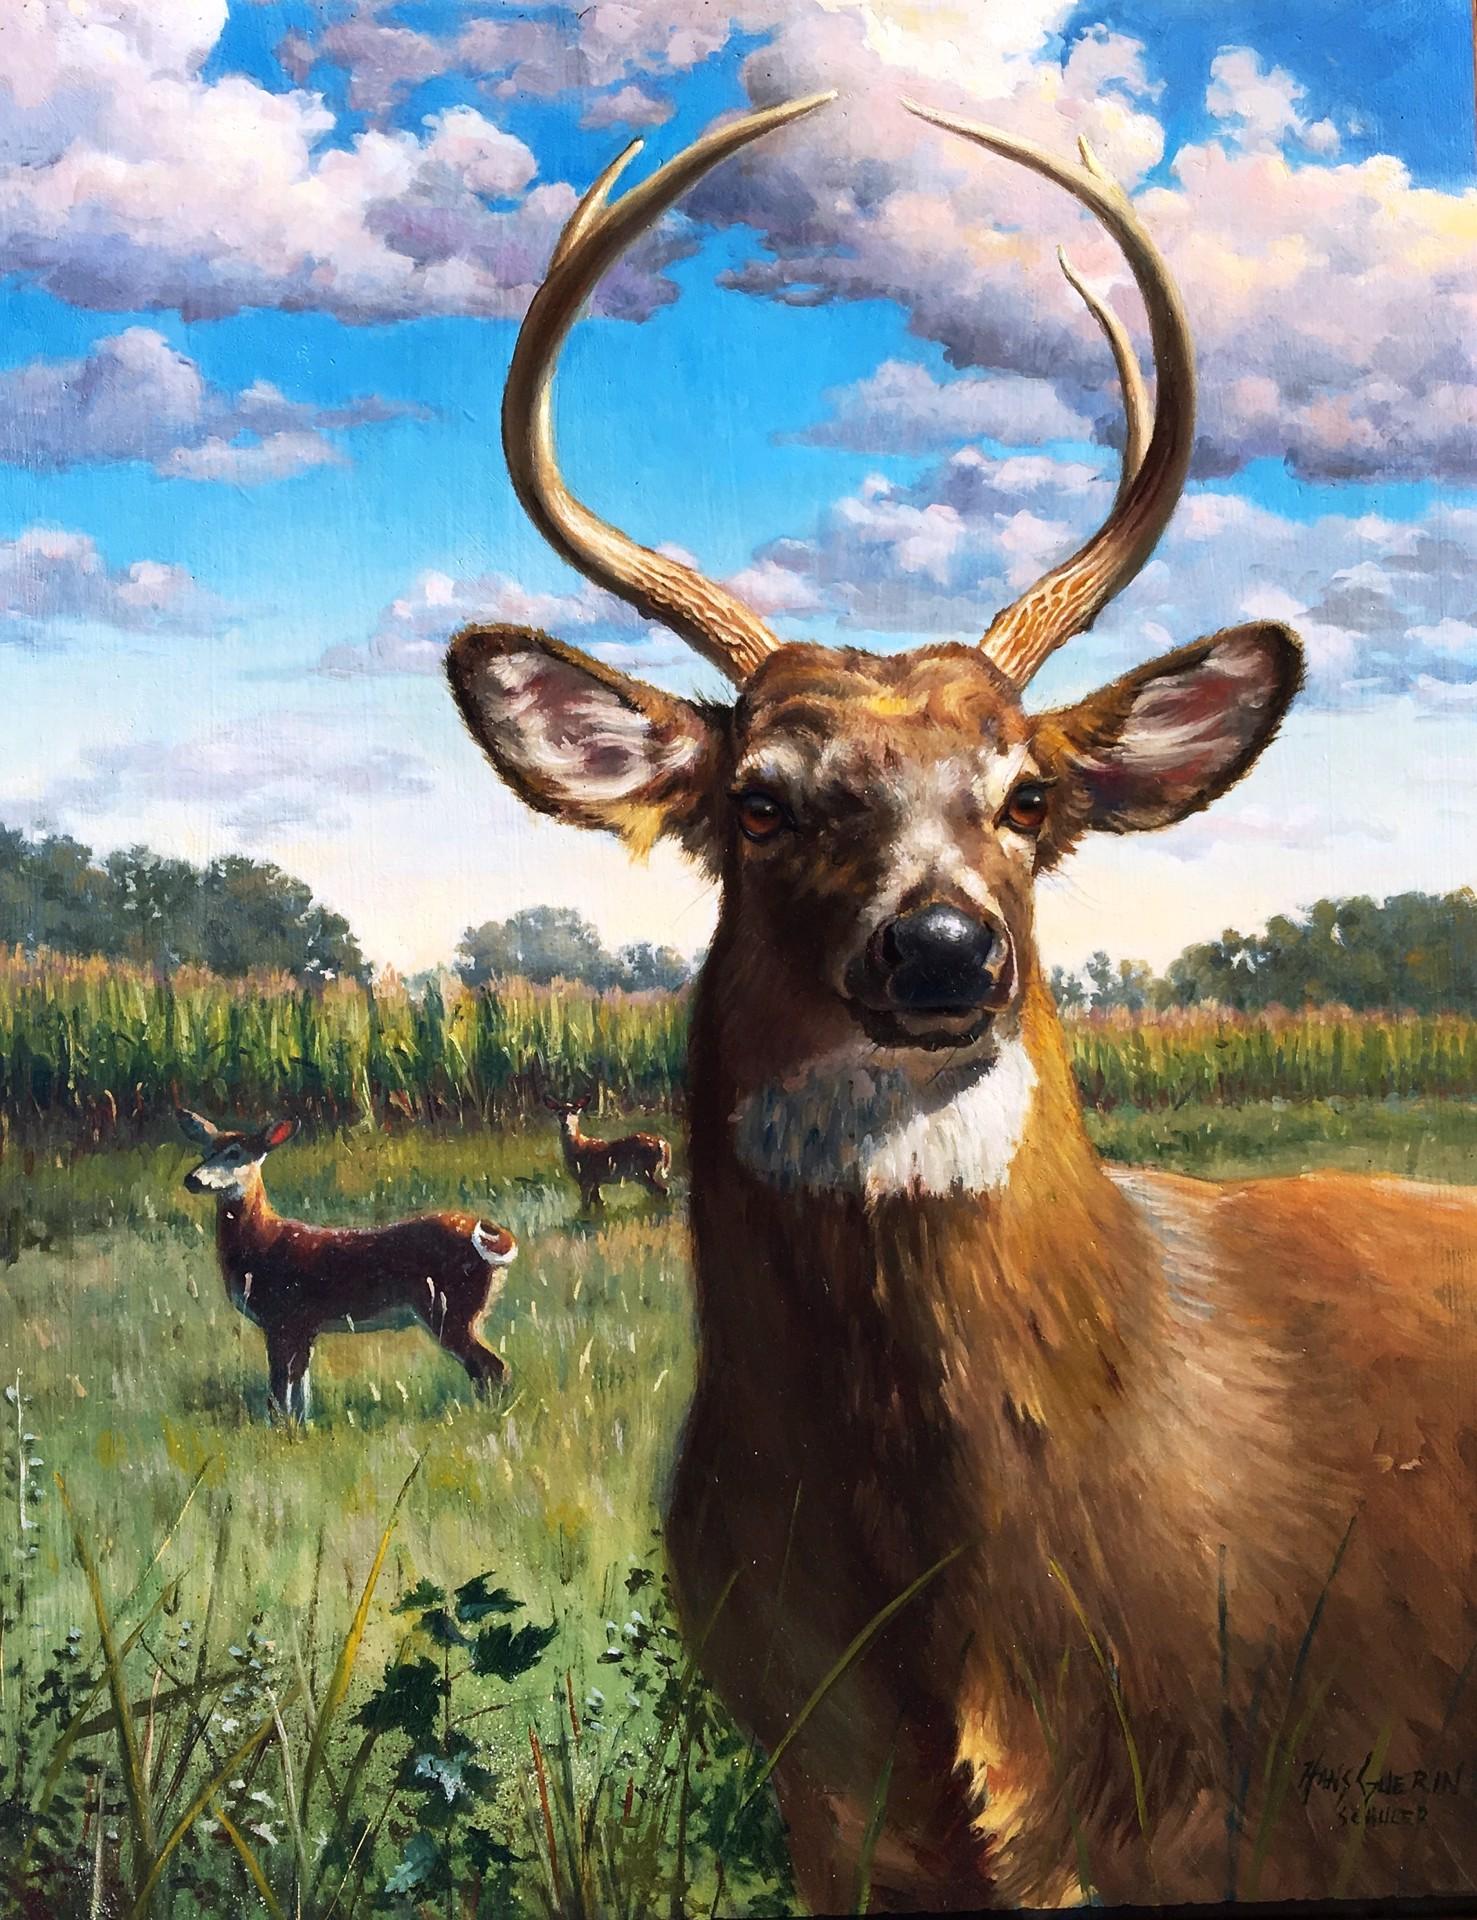 "Leery Deeries", eine Öllandschaft mit Hirschen, wurde von Hans Guerin gemalt, einem Nachkommen des Gründers der angesehenen Schuler School of Fine Arts, die Studenten in den Methoden und Techniken der alten europäischen Meister ausbildet. Ein